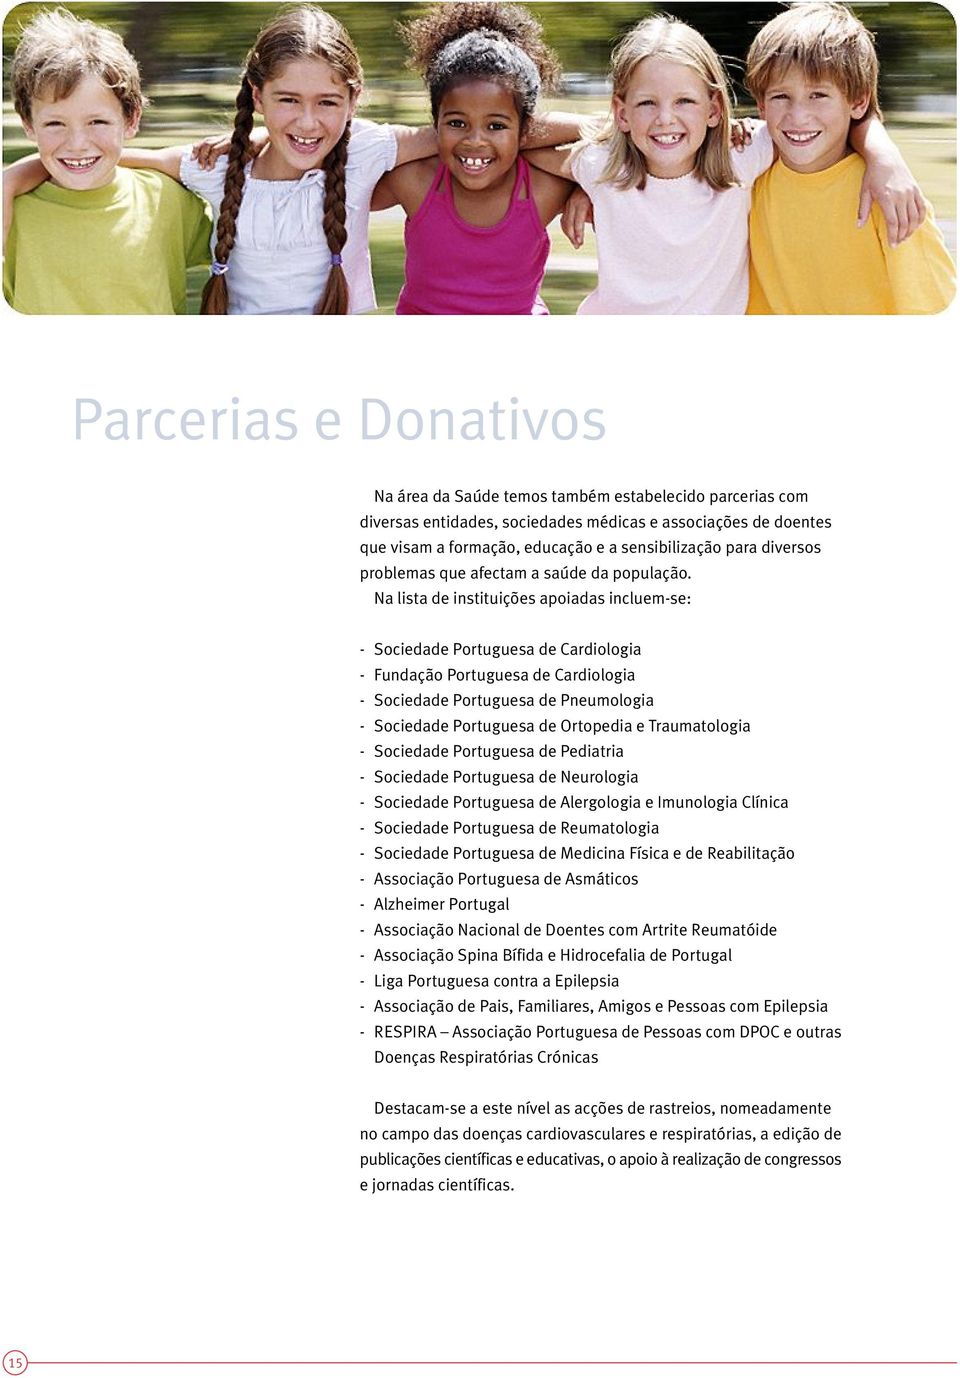 Na lista de instituições apoiadas incluem-se: - Sociedade Portuguesa de Cardiologia - Fundação Portuguesa de Cardiologia - Sociedade Portuguesa de Pneumologia - Sociedade Portuguesa de Ortopedia e